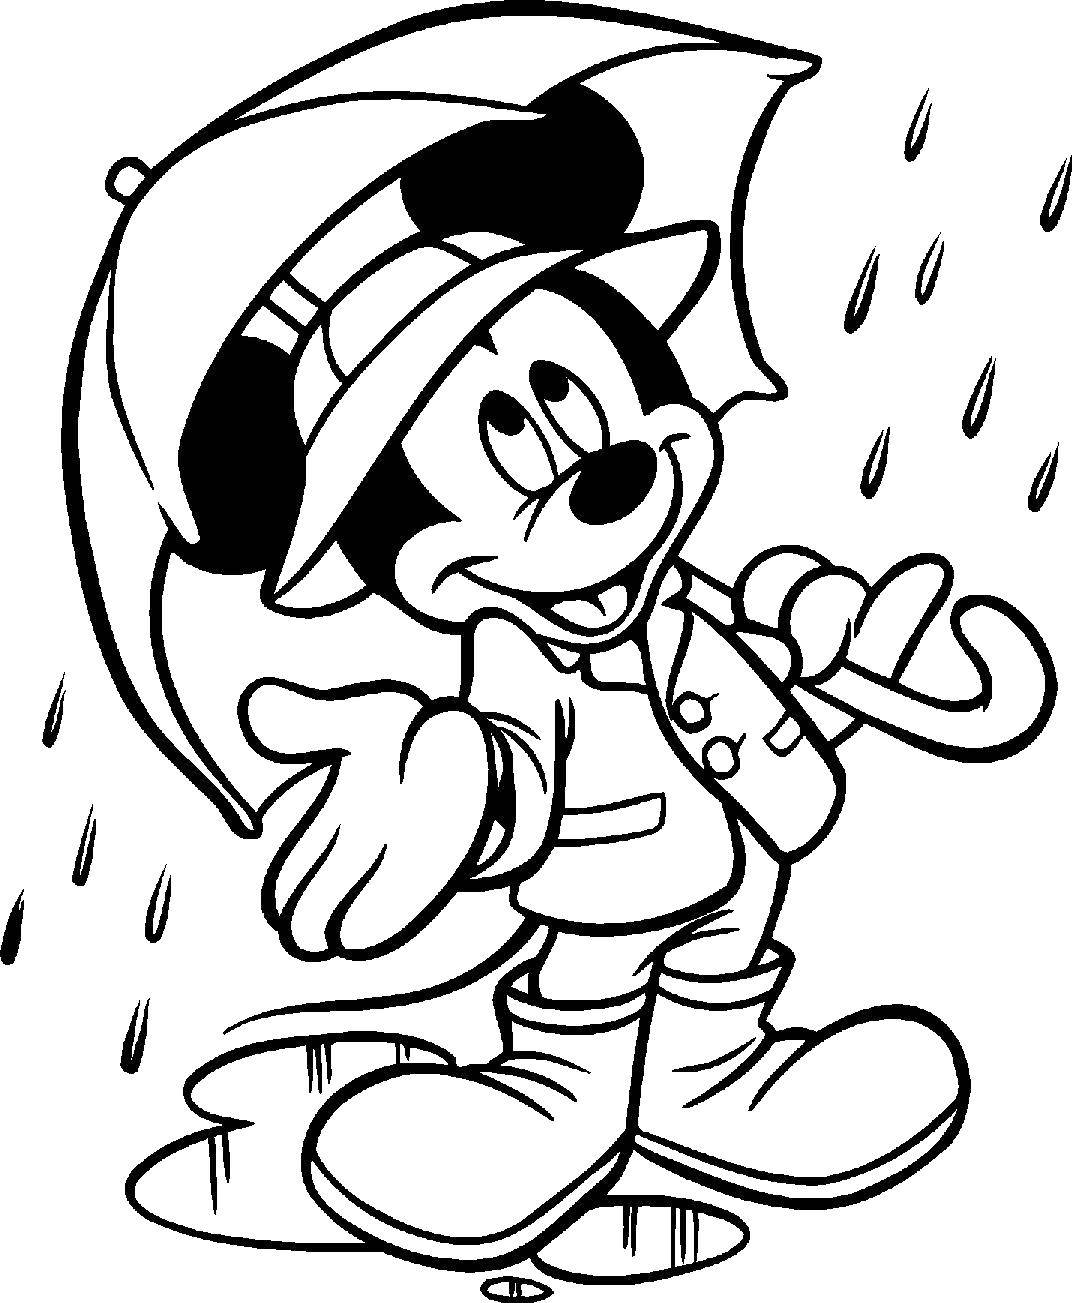 Название: Раскраска Микки маус с зонтиком. Категория: Диснеевские мультфильмы. Теги: Микки Маус, зонт.